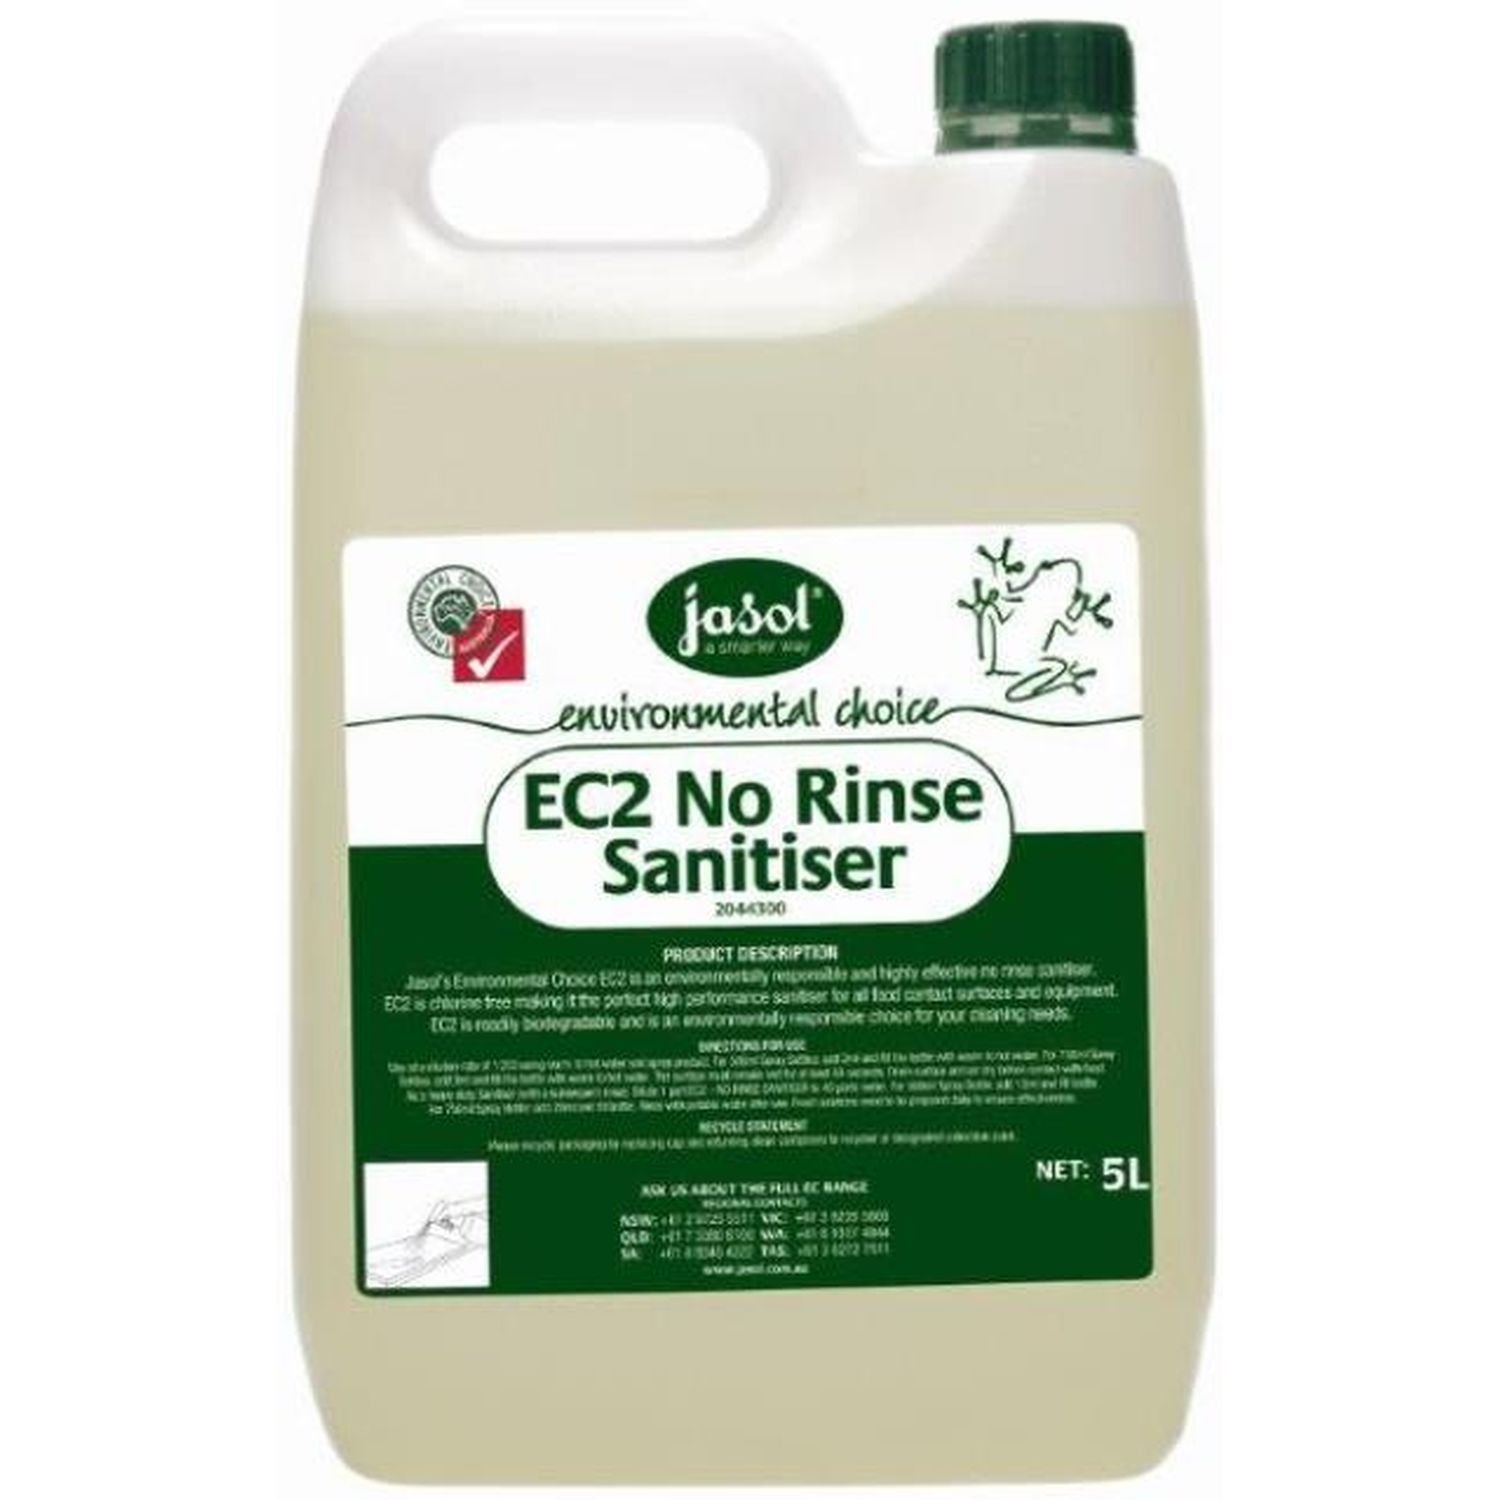 EC2 No Rinse Sanitiser 5L